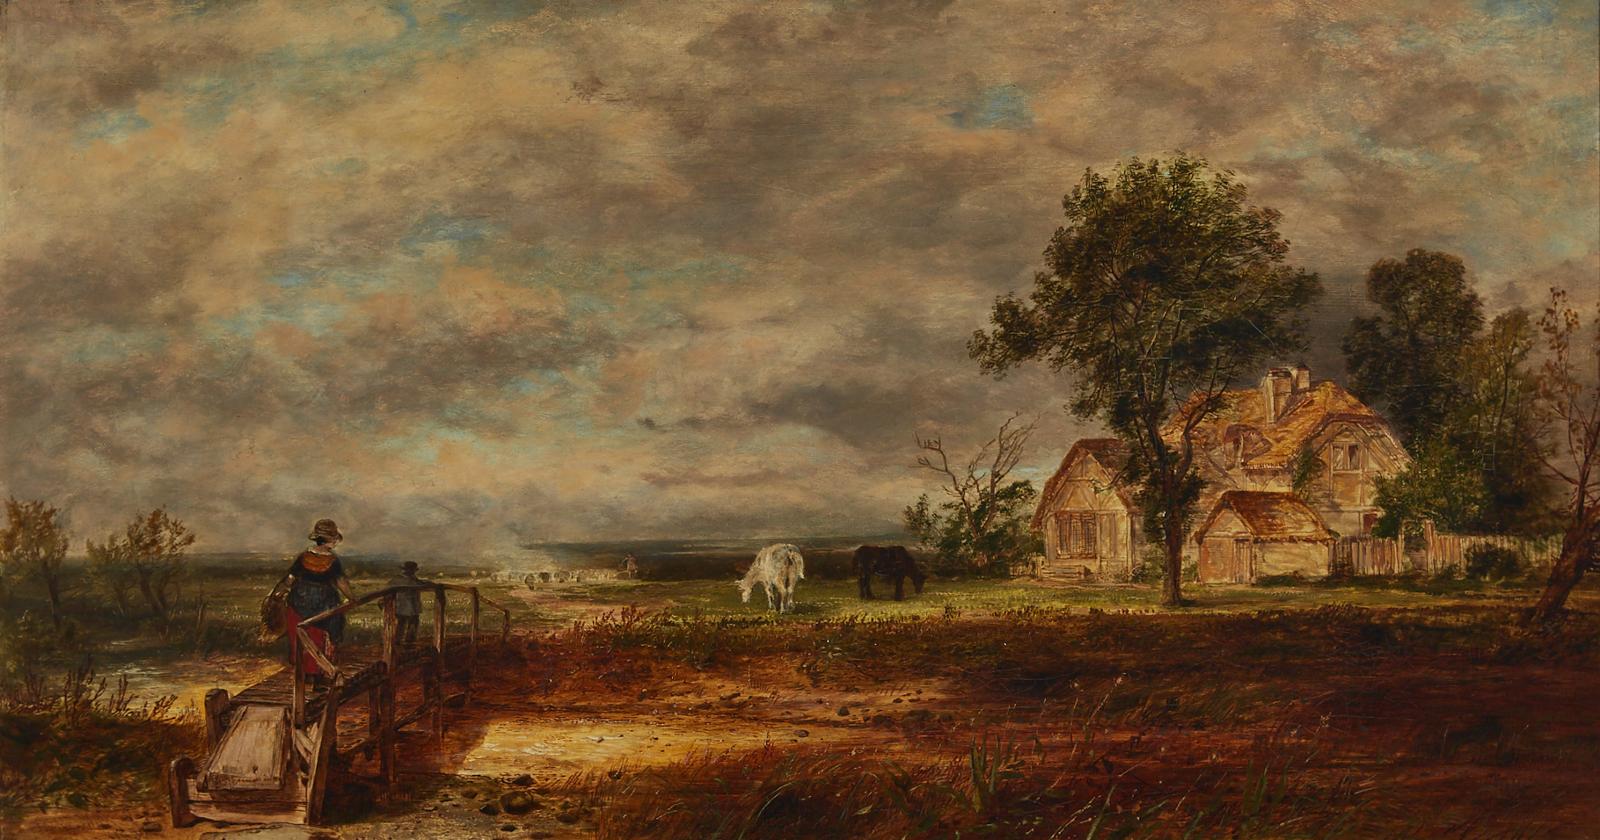 Thomas Creswick (1811-1869) - At Matlock Derby, 1850